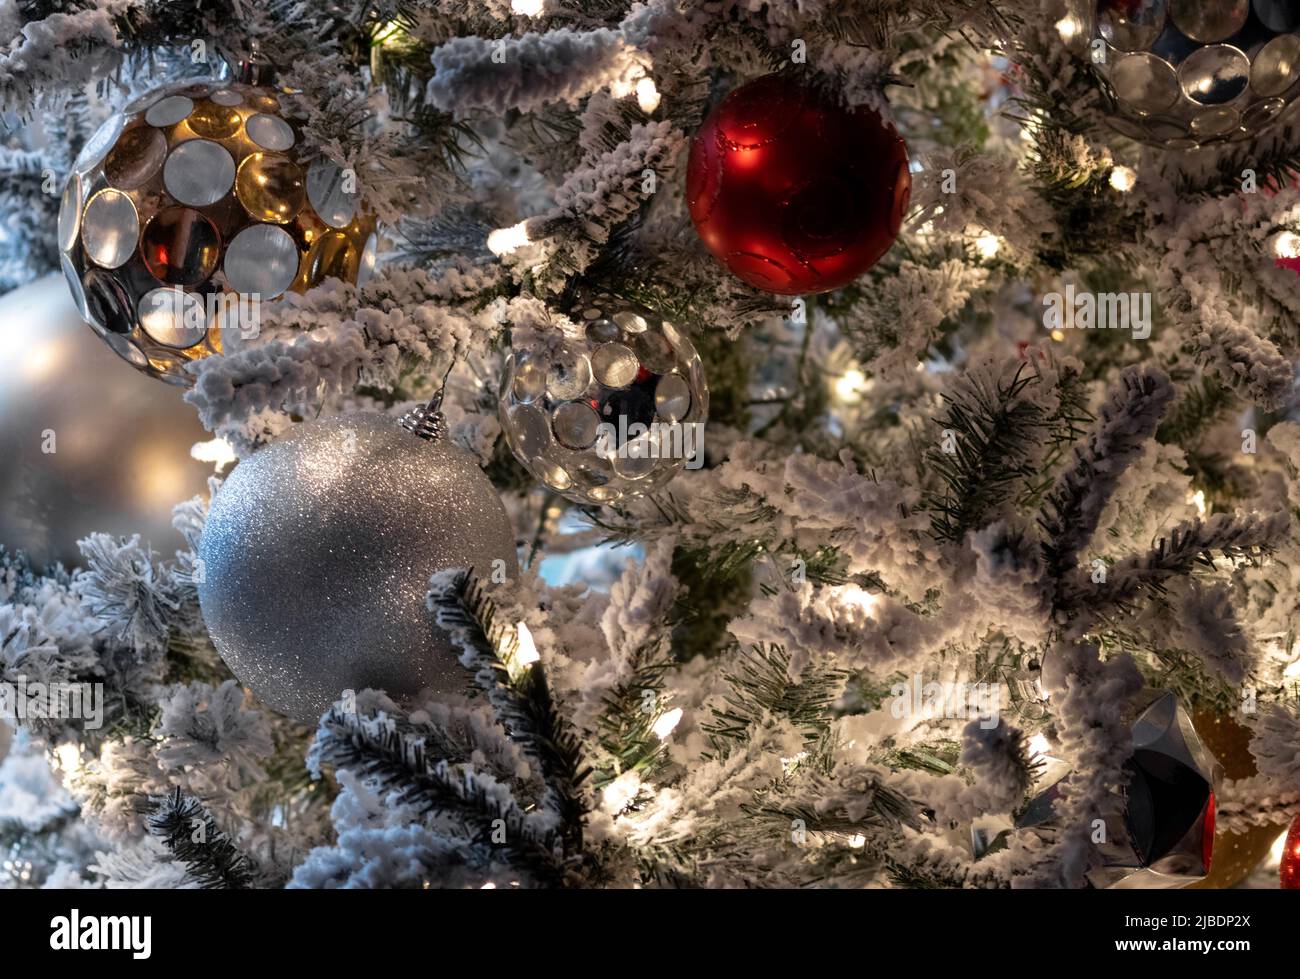 primer plano decoración de navidad escena, luces blancas en el árbol cubierto de nieve con rojo y blanco, plata y oro bolas de navidad, festiva escena de vacaciones Foto de stock